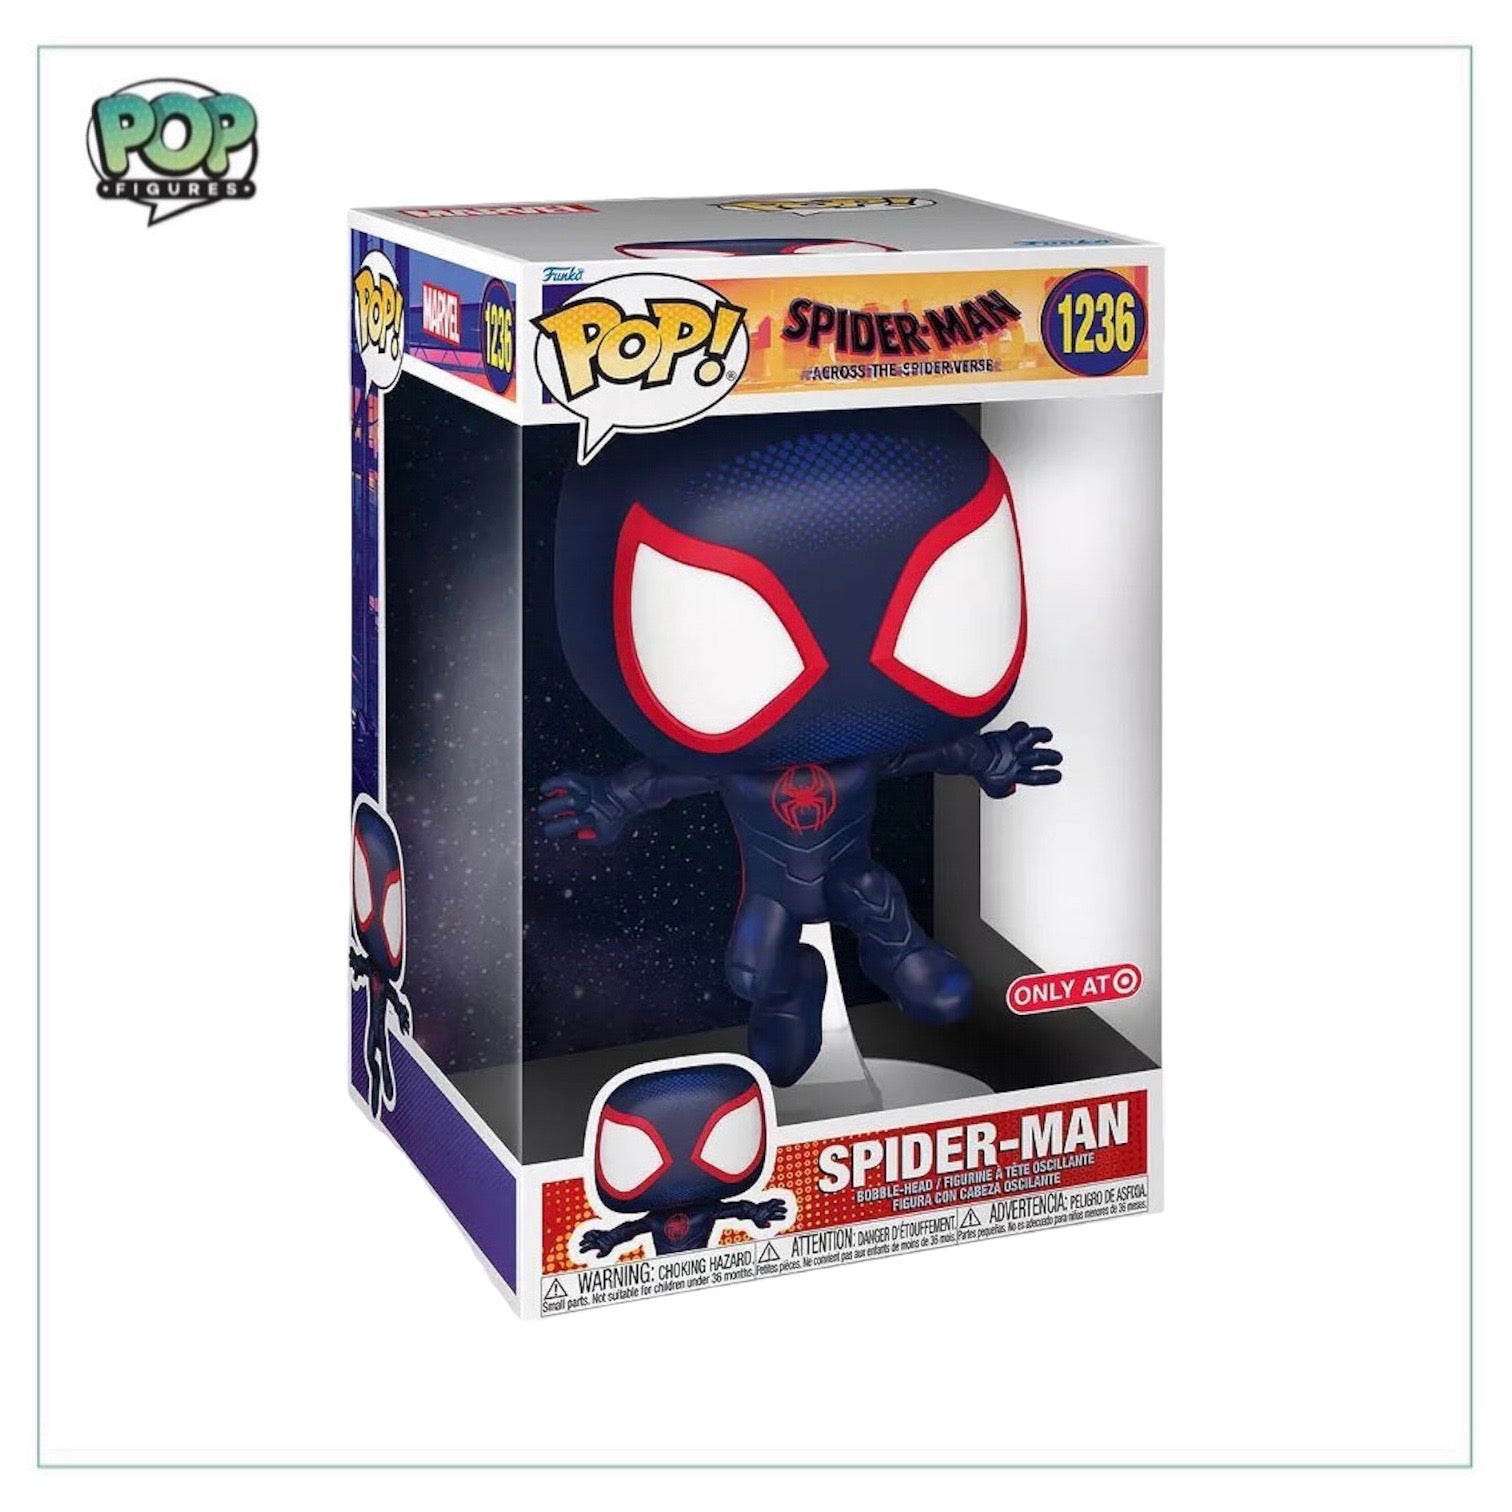 Spider-Man #1236 10" Funko Pop! - Spider-Man Across the Spider-Verse - Target Exclusive